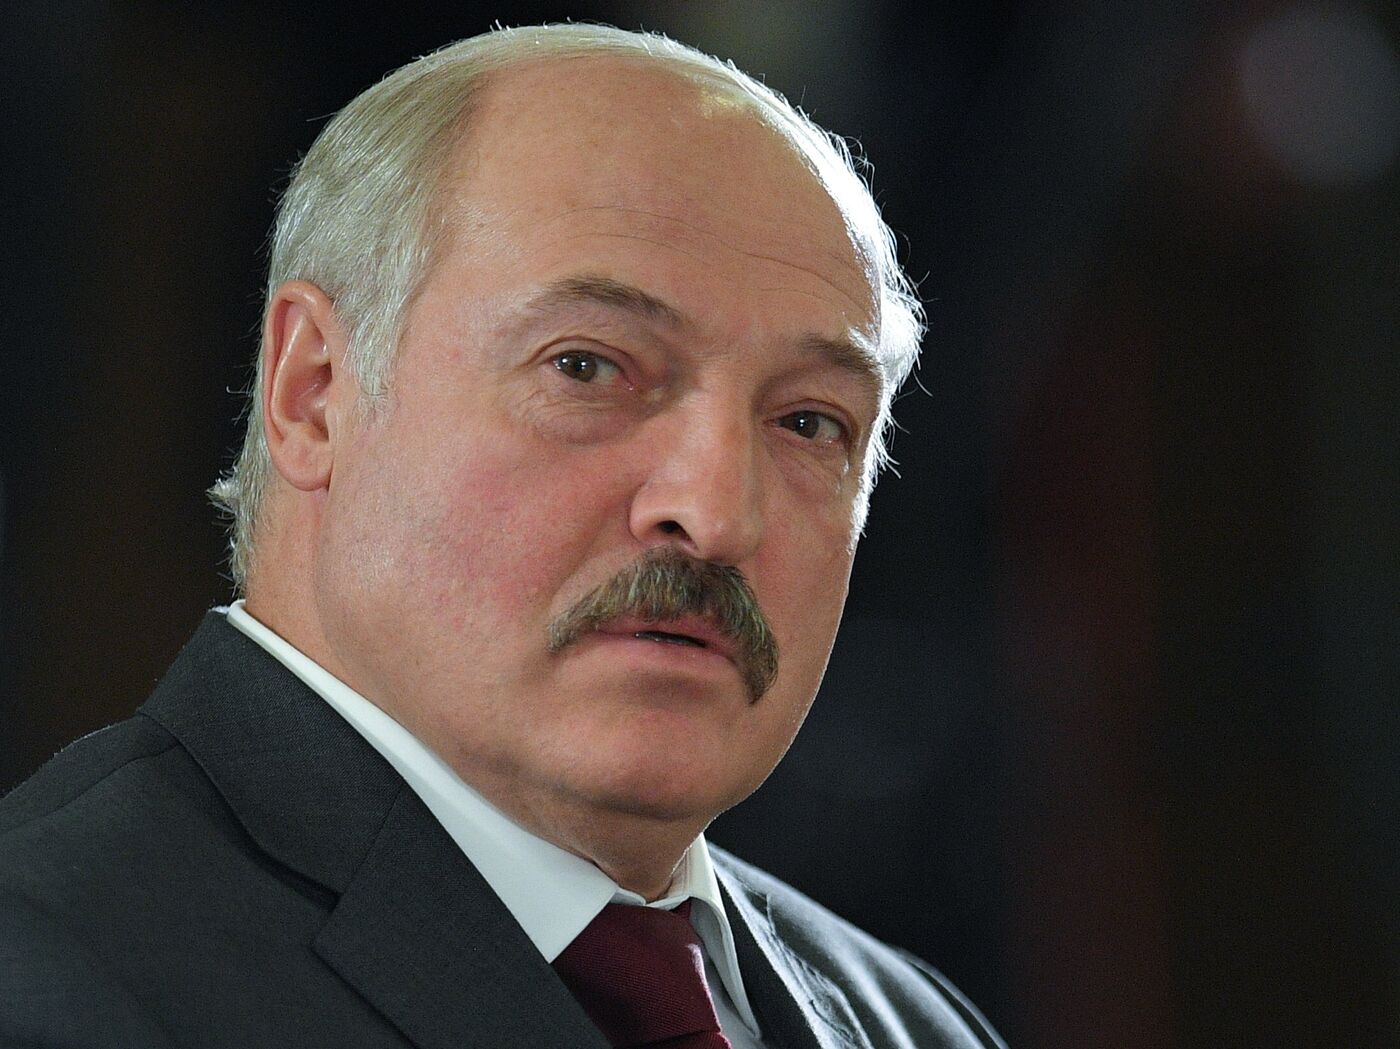 Лукашенко сдался. Объединение начнётся осенью 2021 года